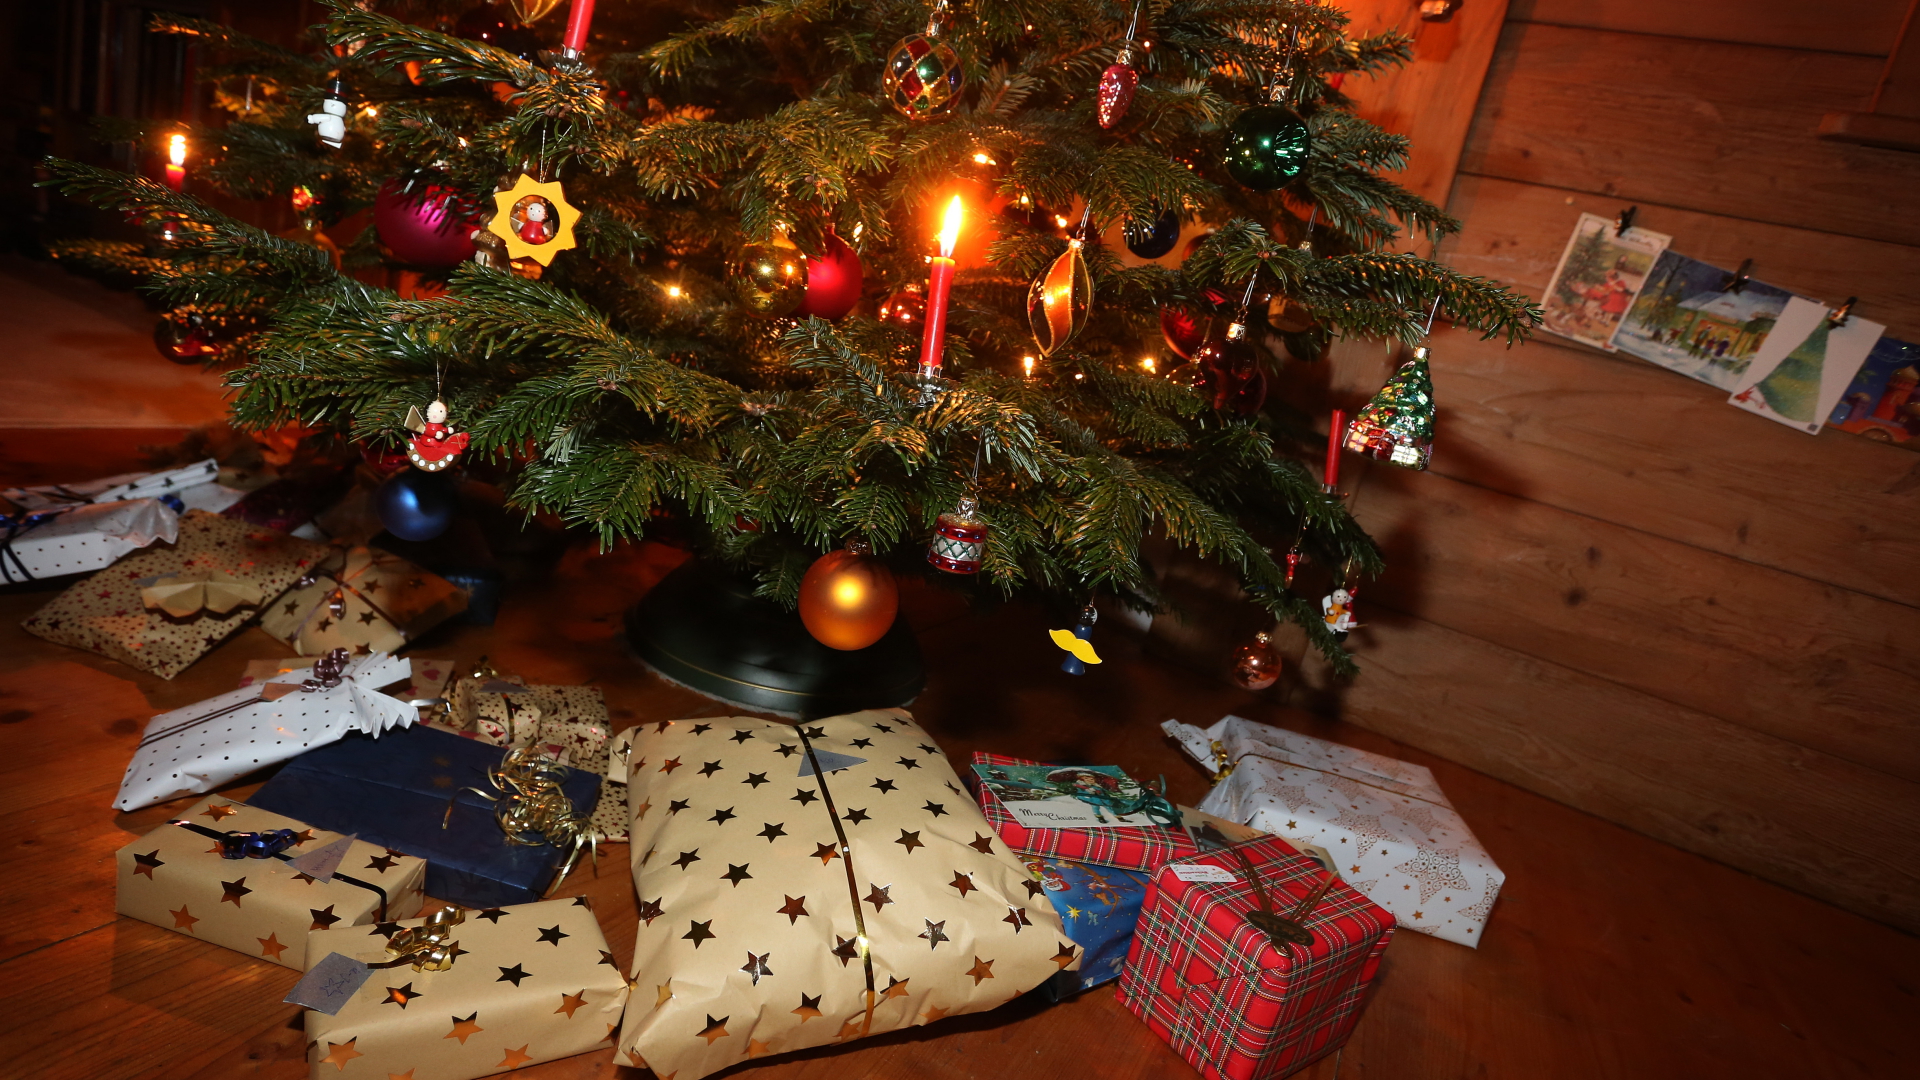 Pakete liegen unter einem geschmückten Weihnachtsbaum